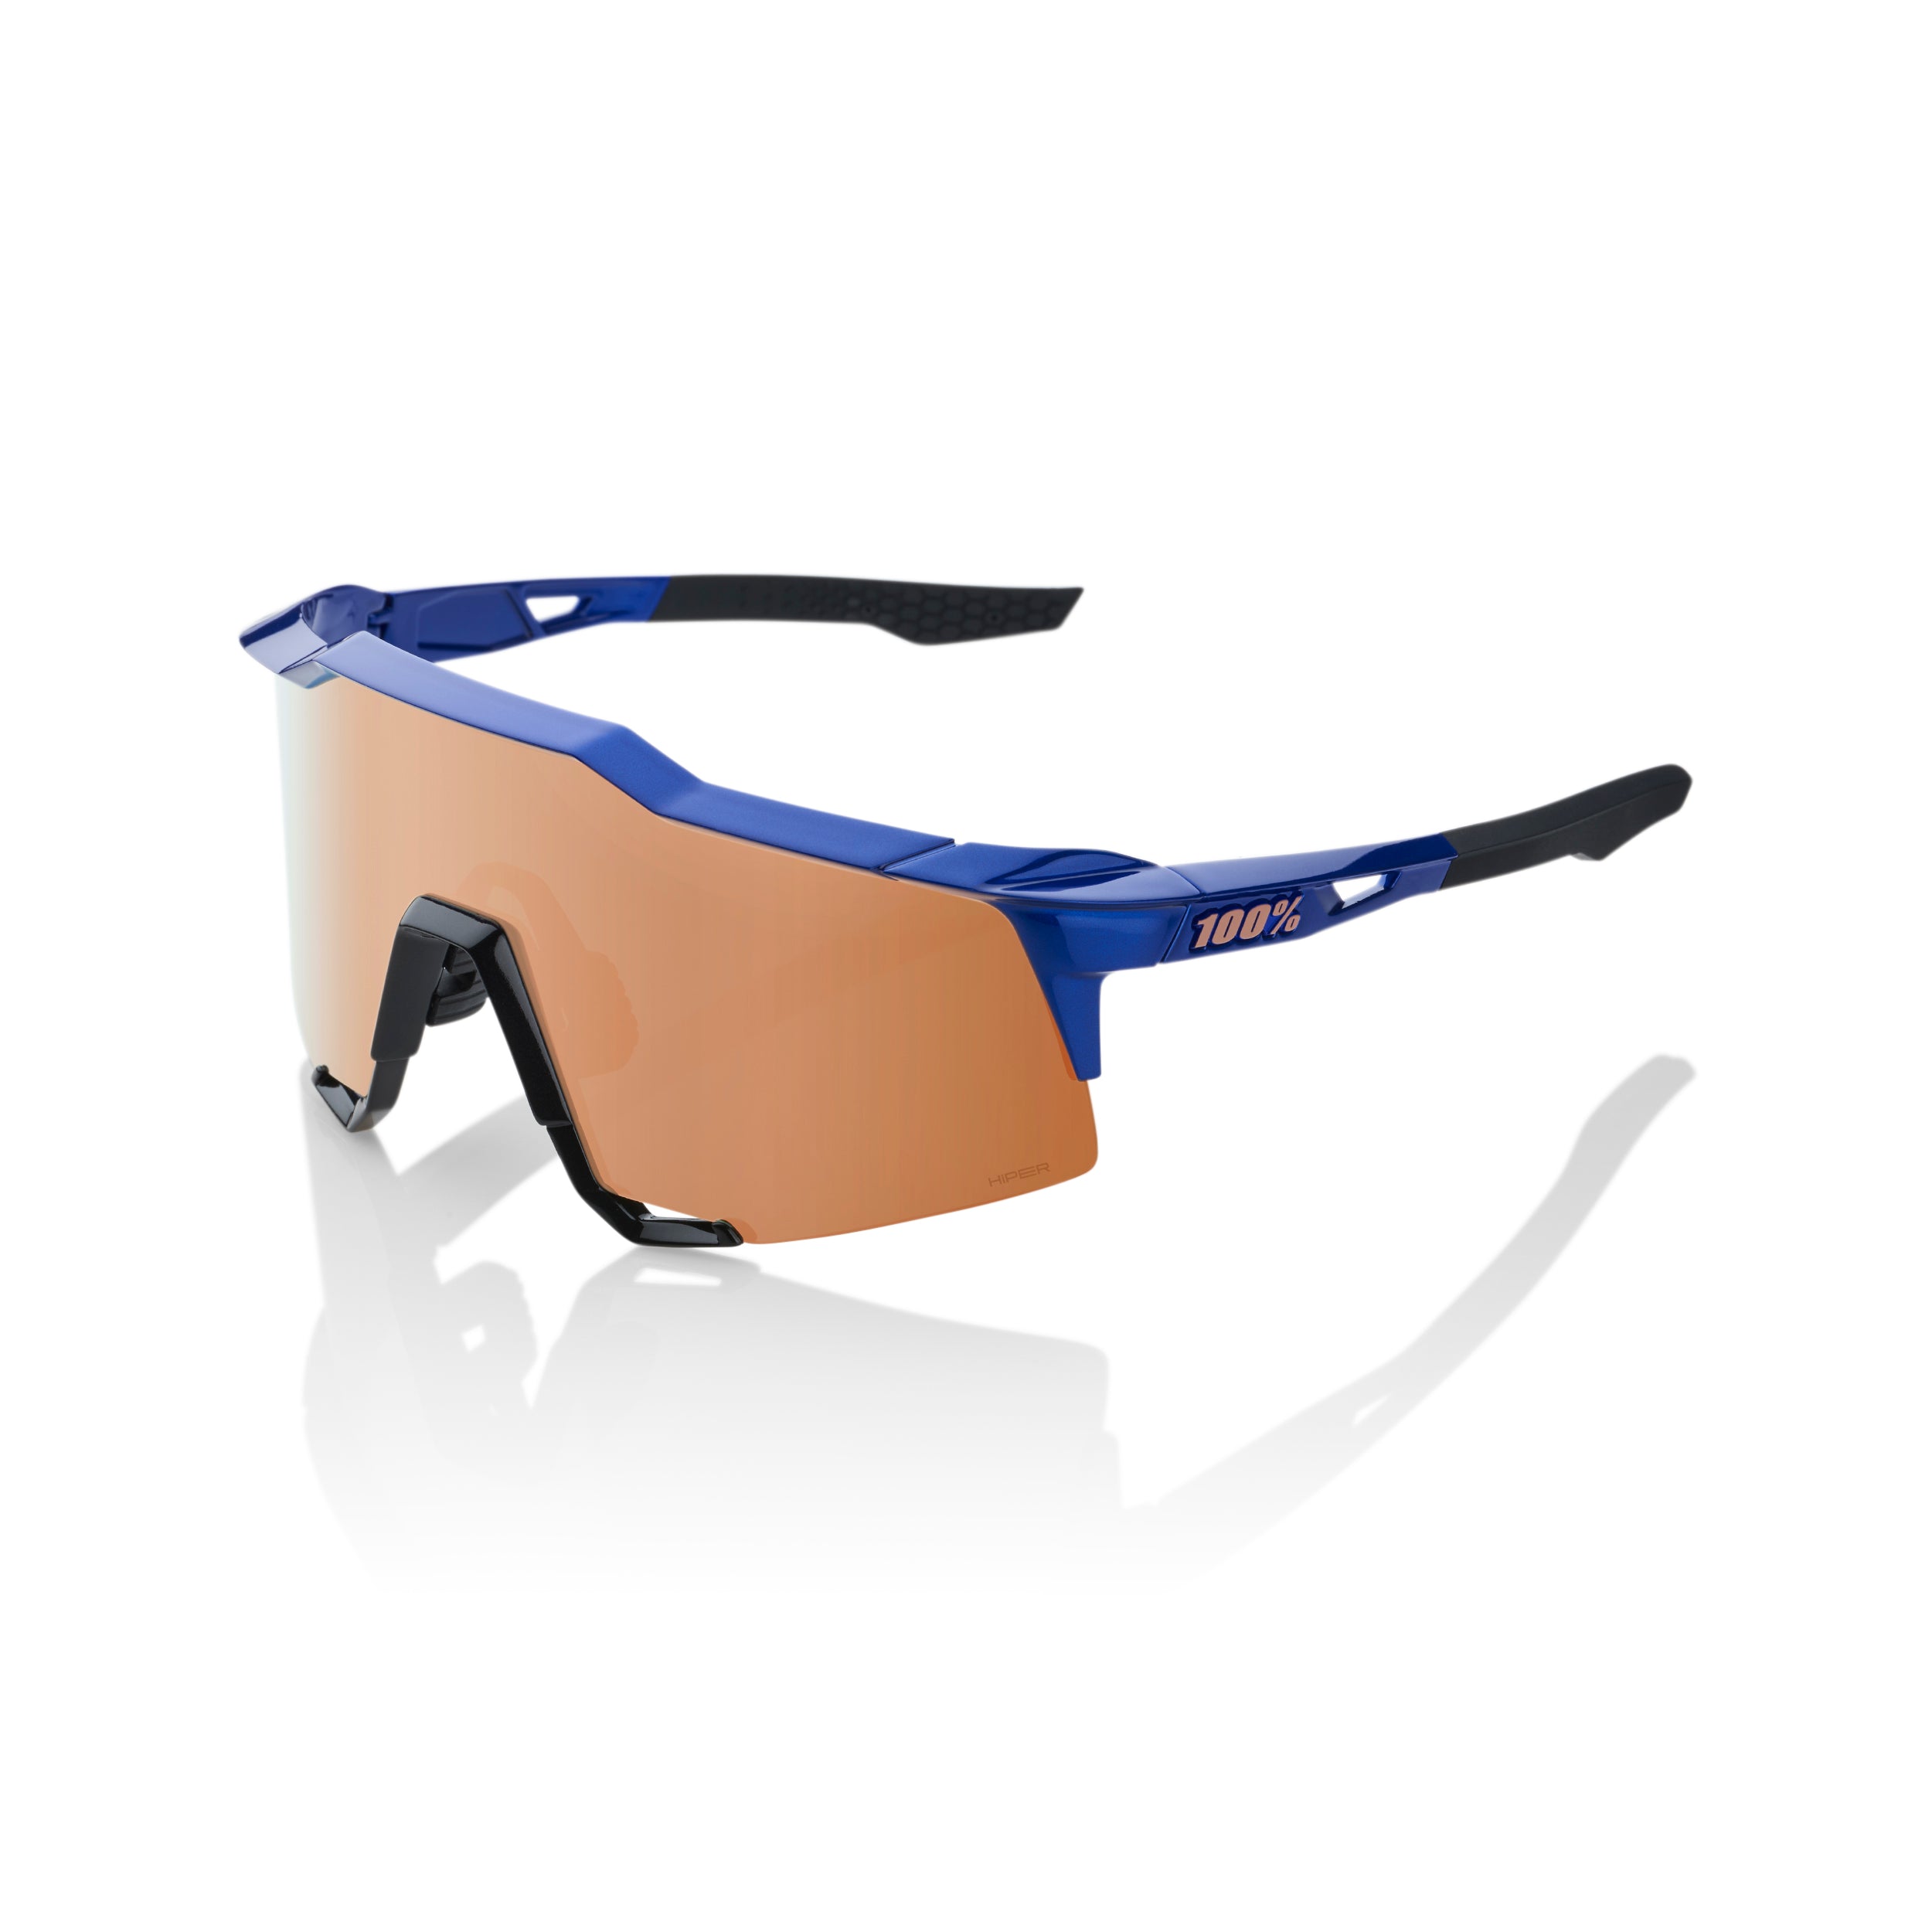 100% SPEEDCRAFT Sport Performance Sunglasses, Gloss Cobalt Blue, Copper